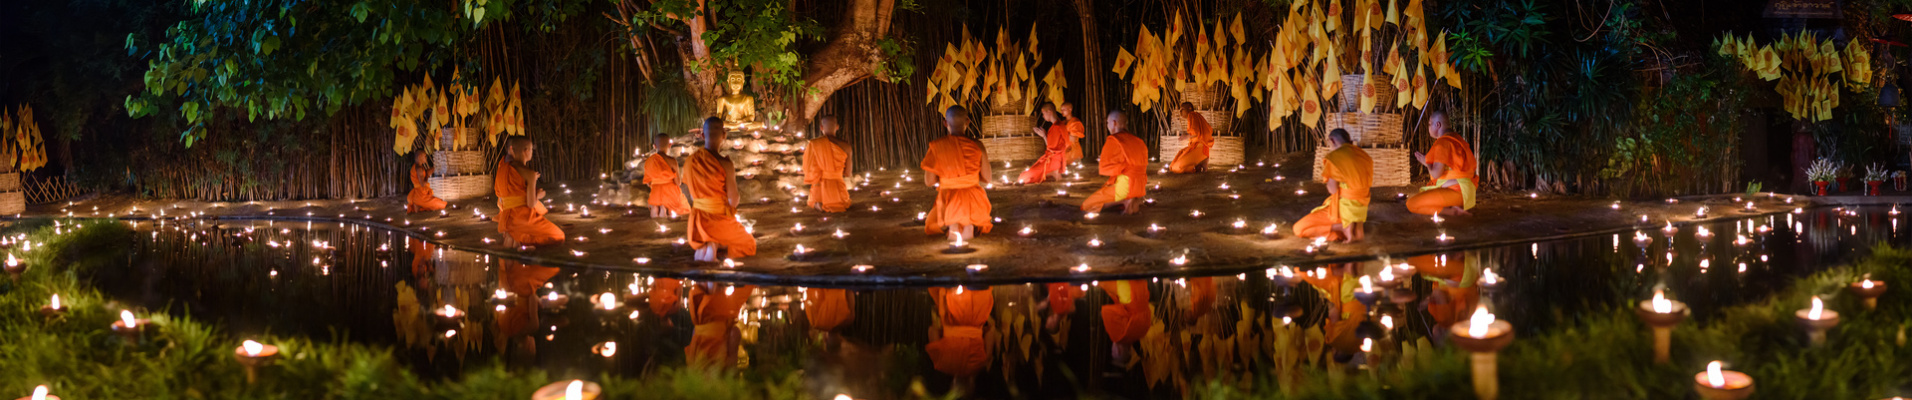 temple chiang mai thailande